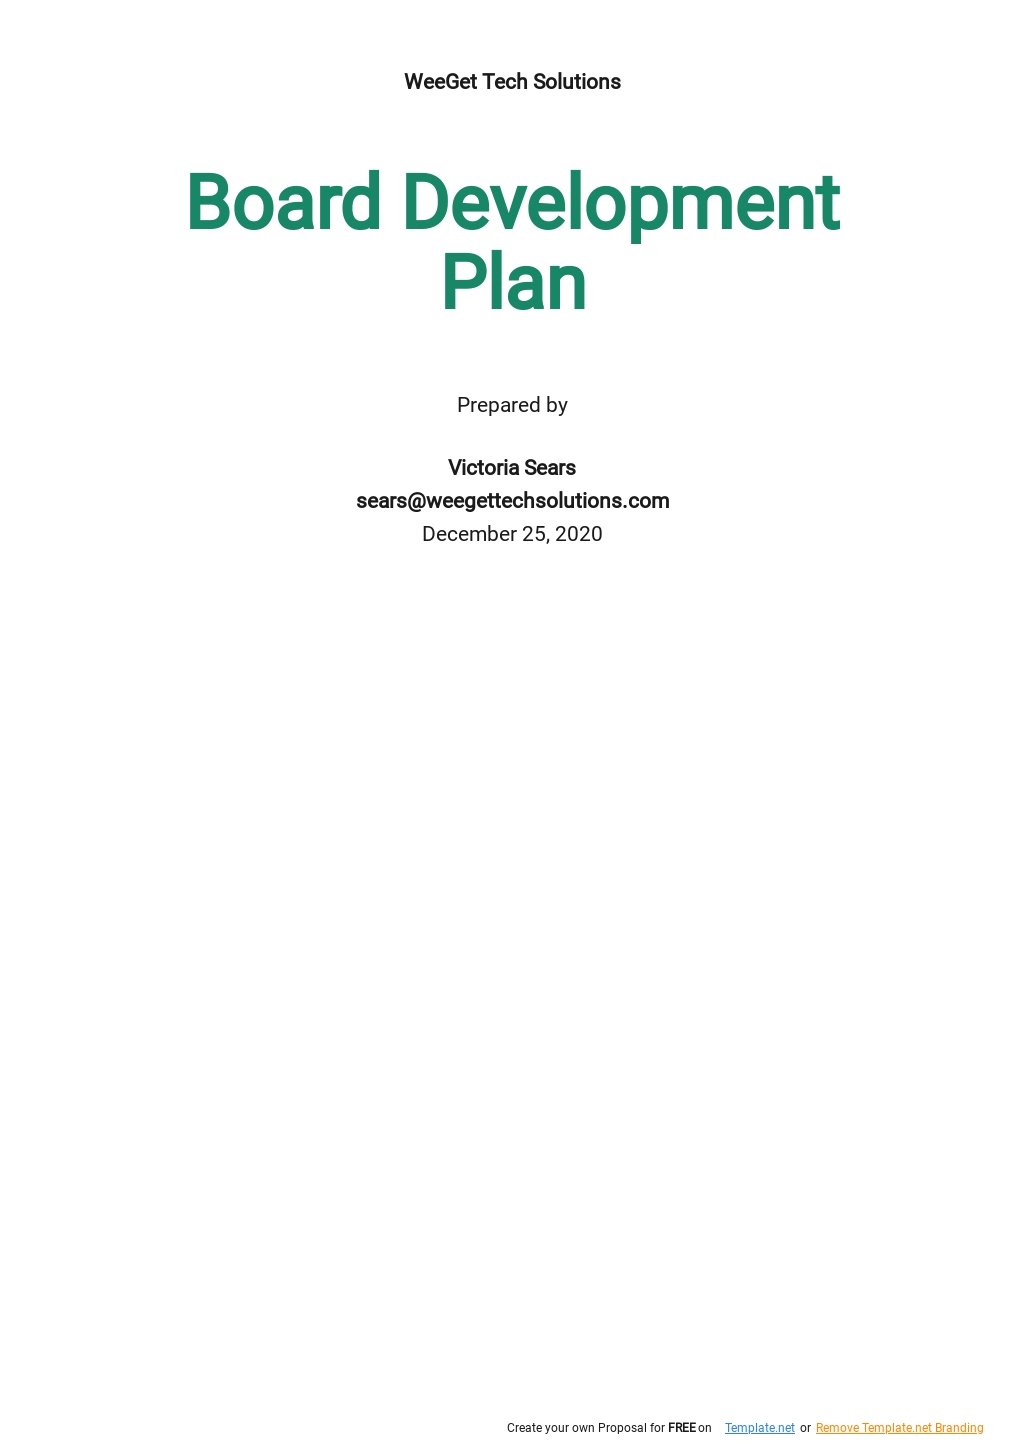 Board Development Plan Template.jpe